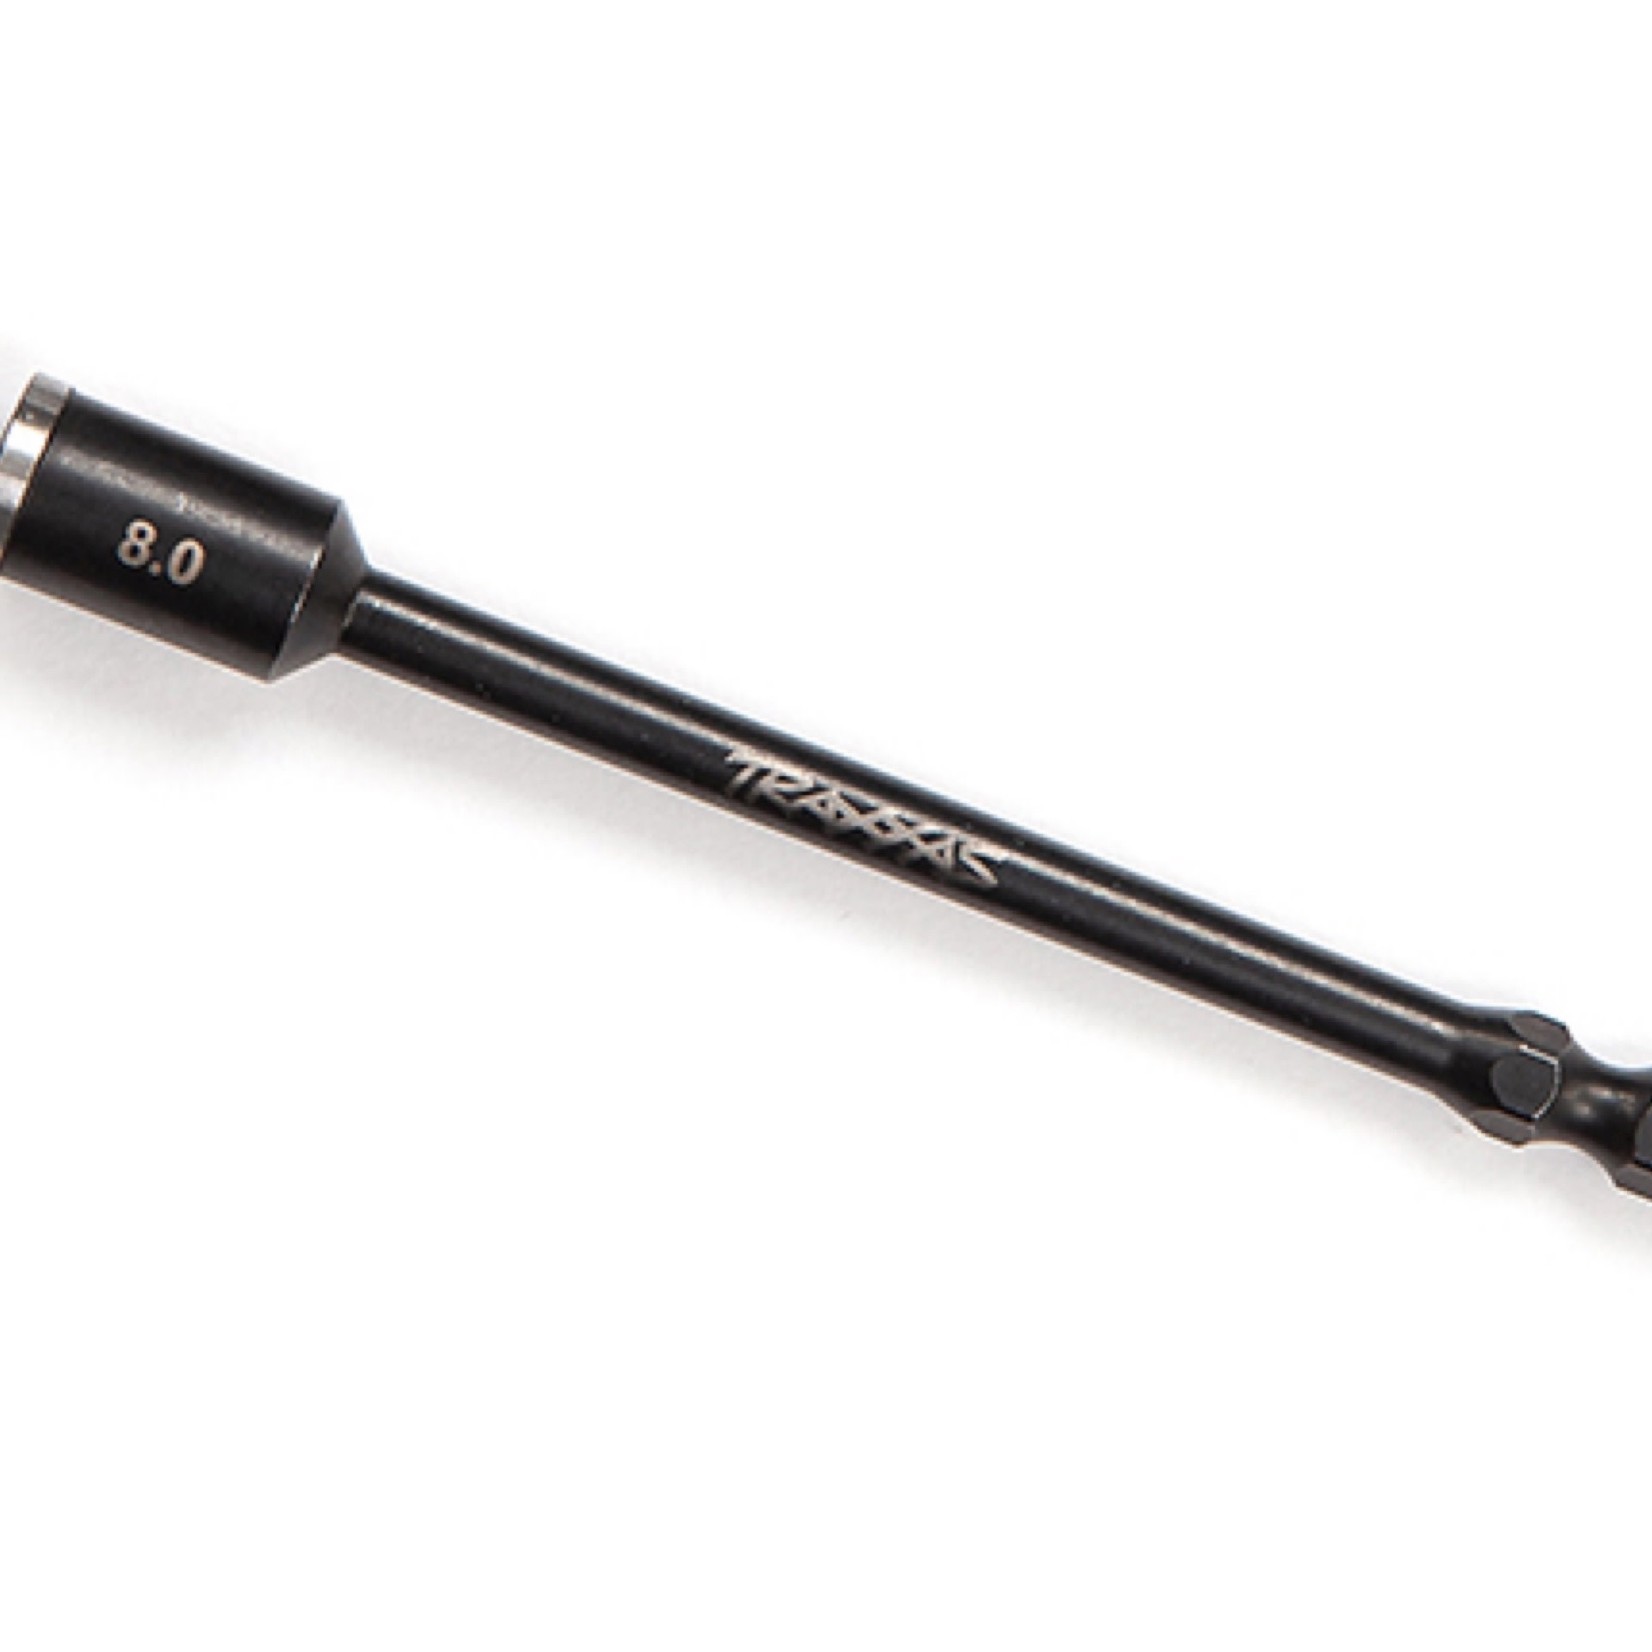 Traxxas Traxxas Speed Bit Nut Driver (8.0mm) (Glow Plug Wrench) #8719-80